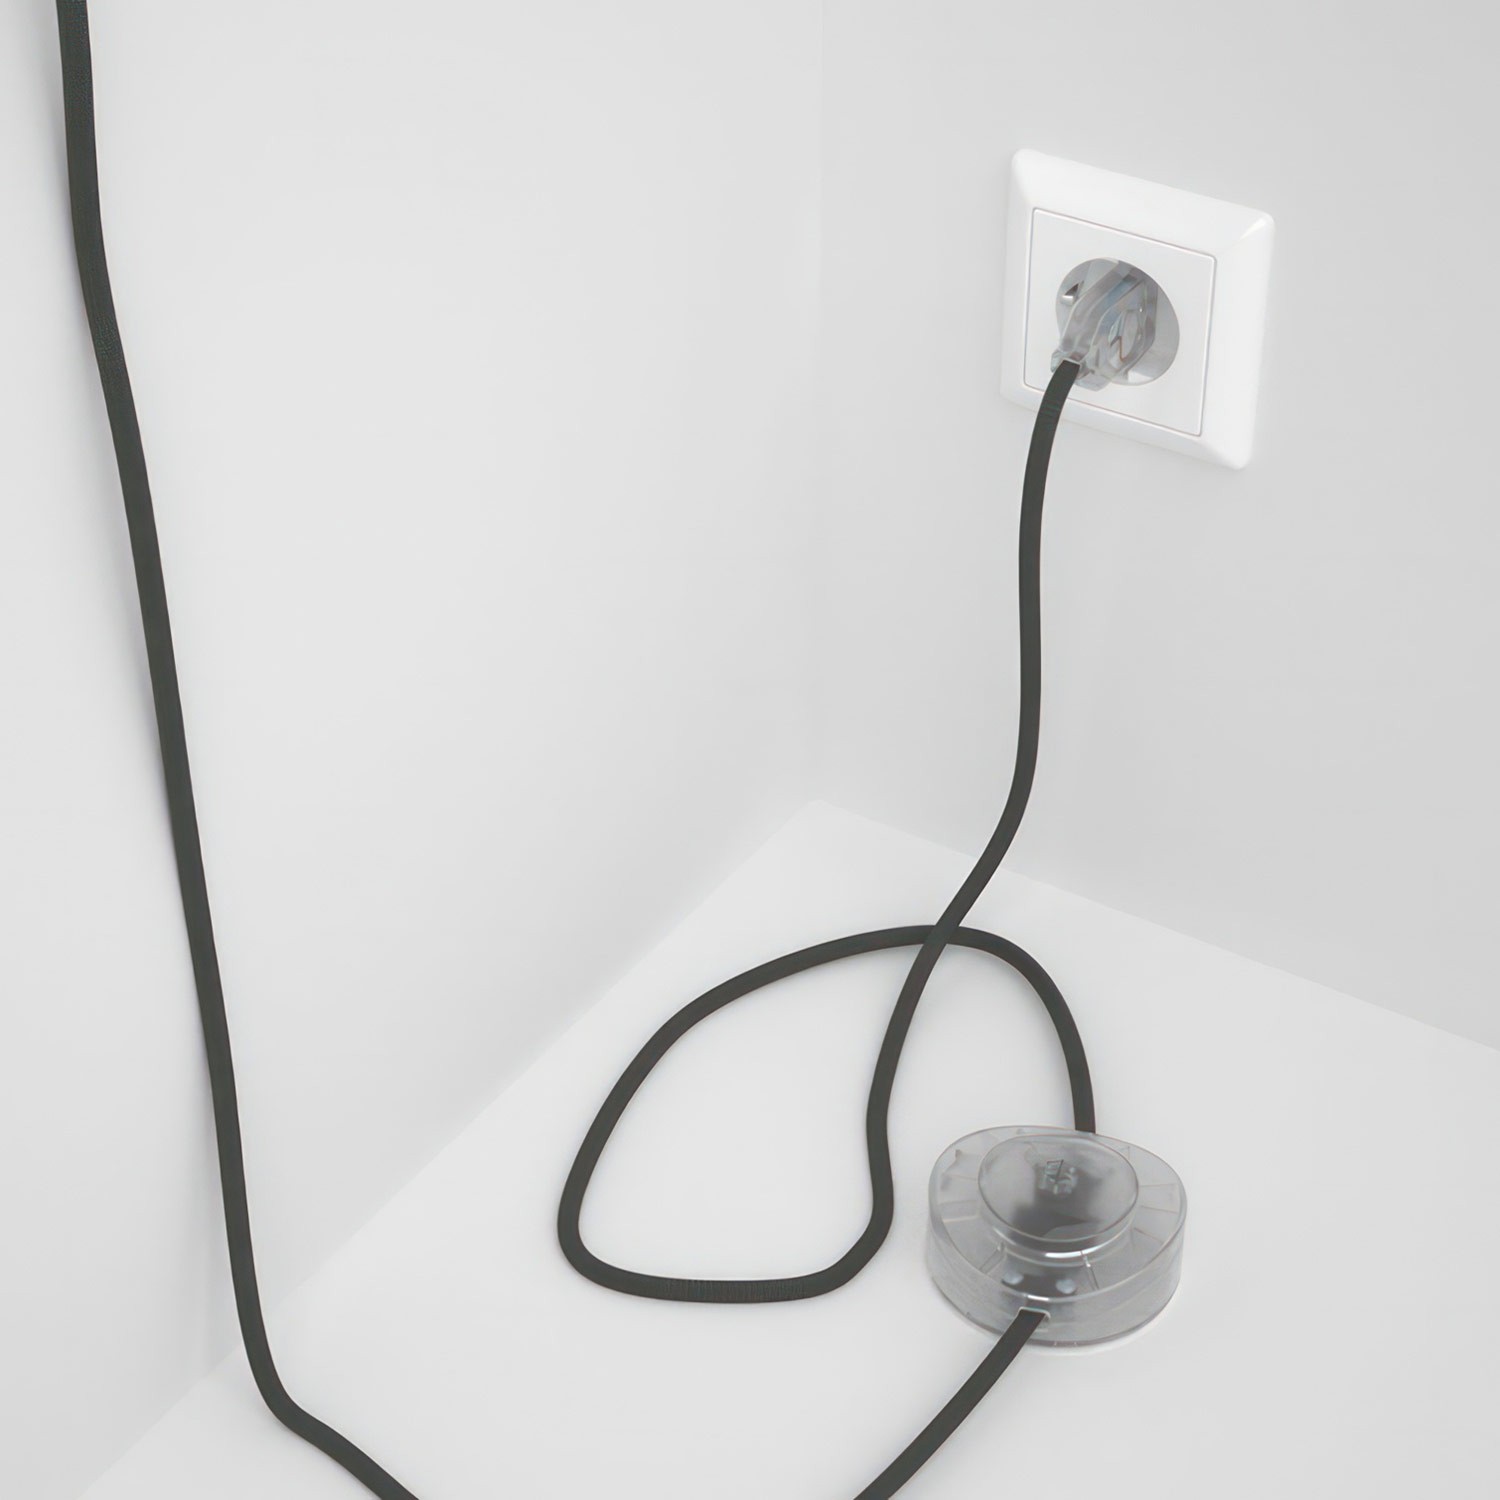 Cableado para lámpara de pie, cable RM03 Efecto Seda Gris 3 m. Elige tu el color de la clavija y del interruptor!